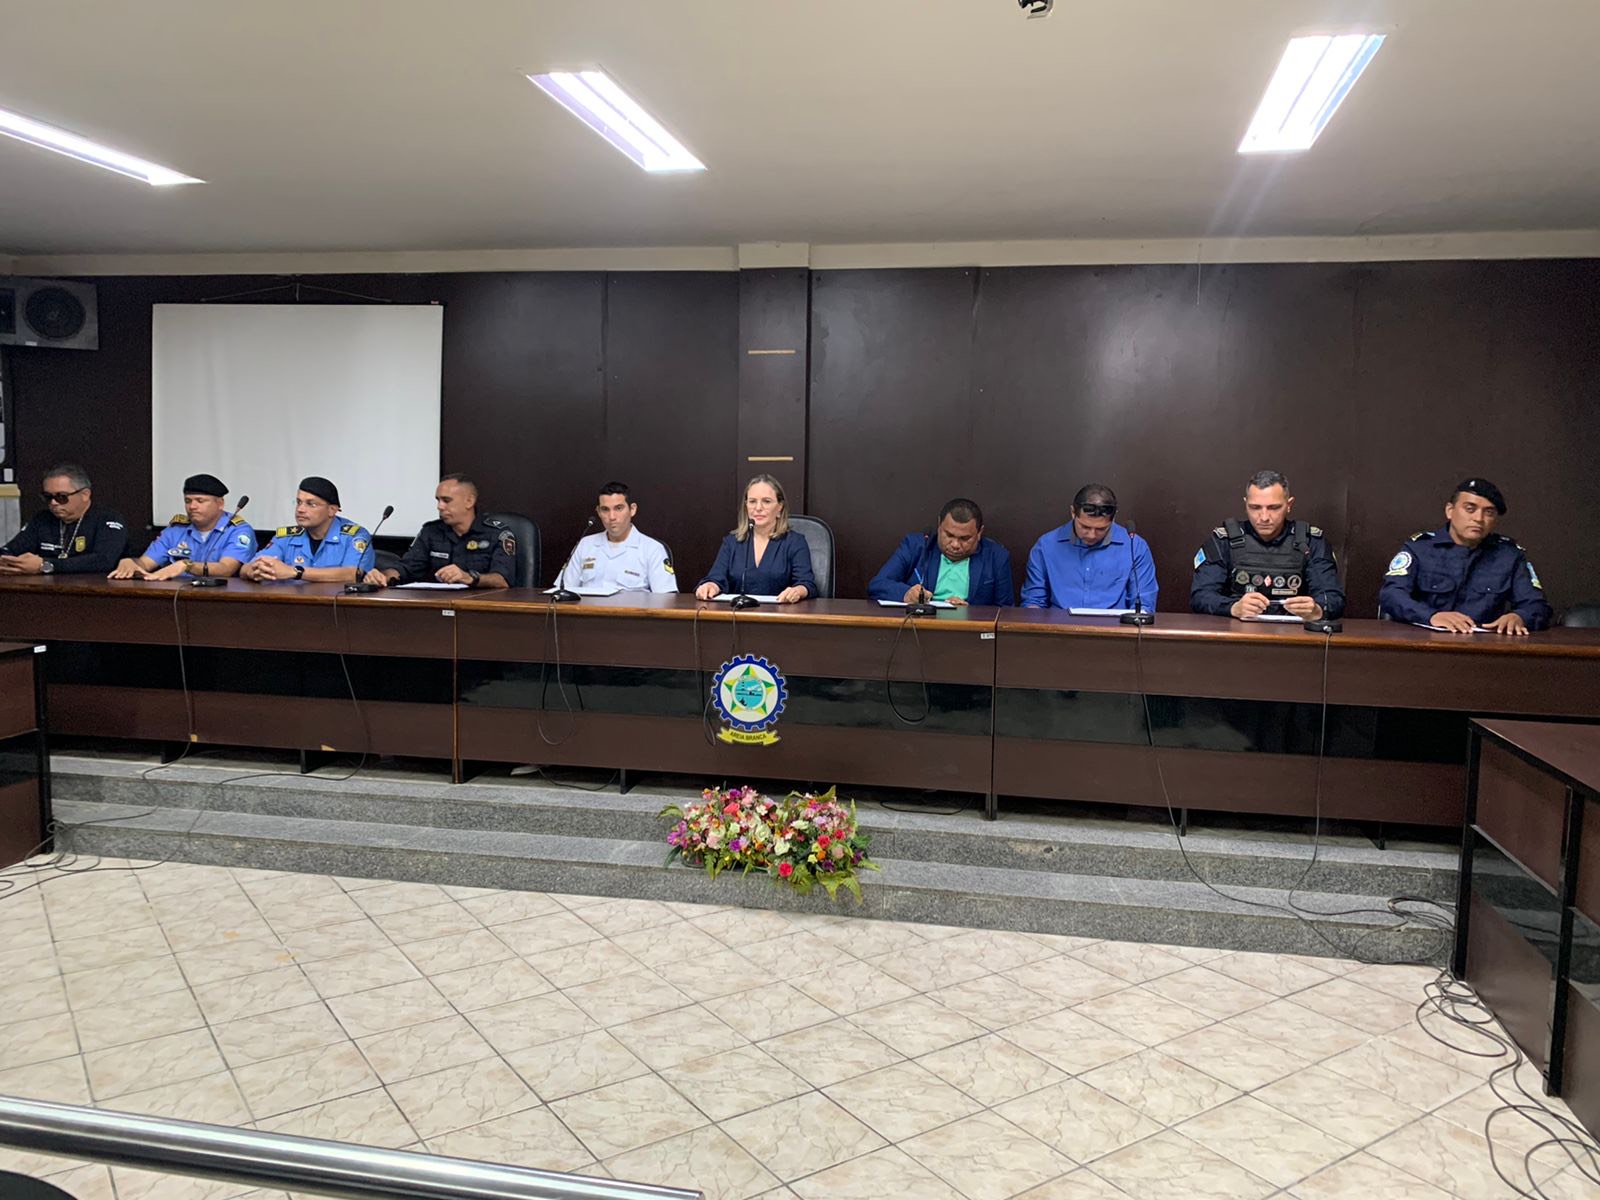 Prefeita Iraneide Rebouças abre Curso de Formação da Guarda Municipal e anuncia aquisição de viaturas e criação da Secretaria de Segurança Pública